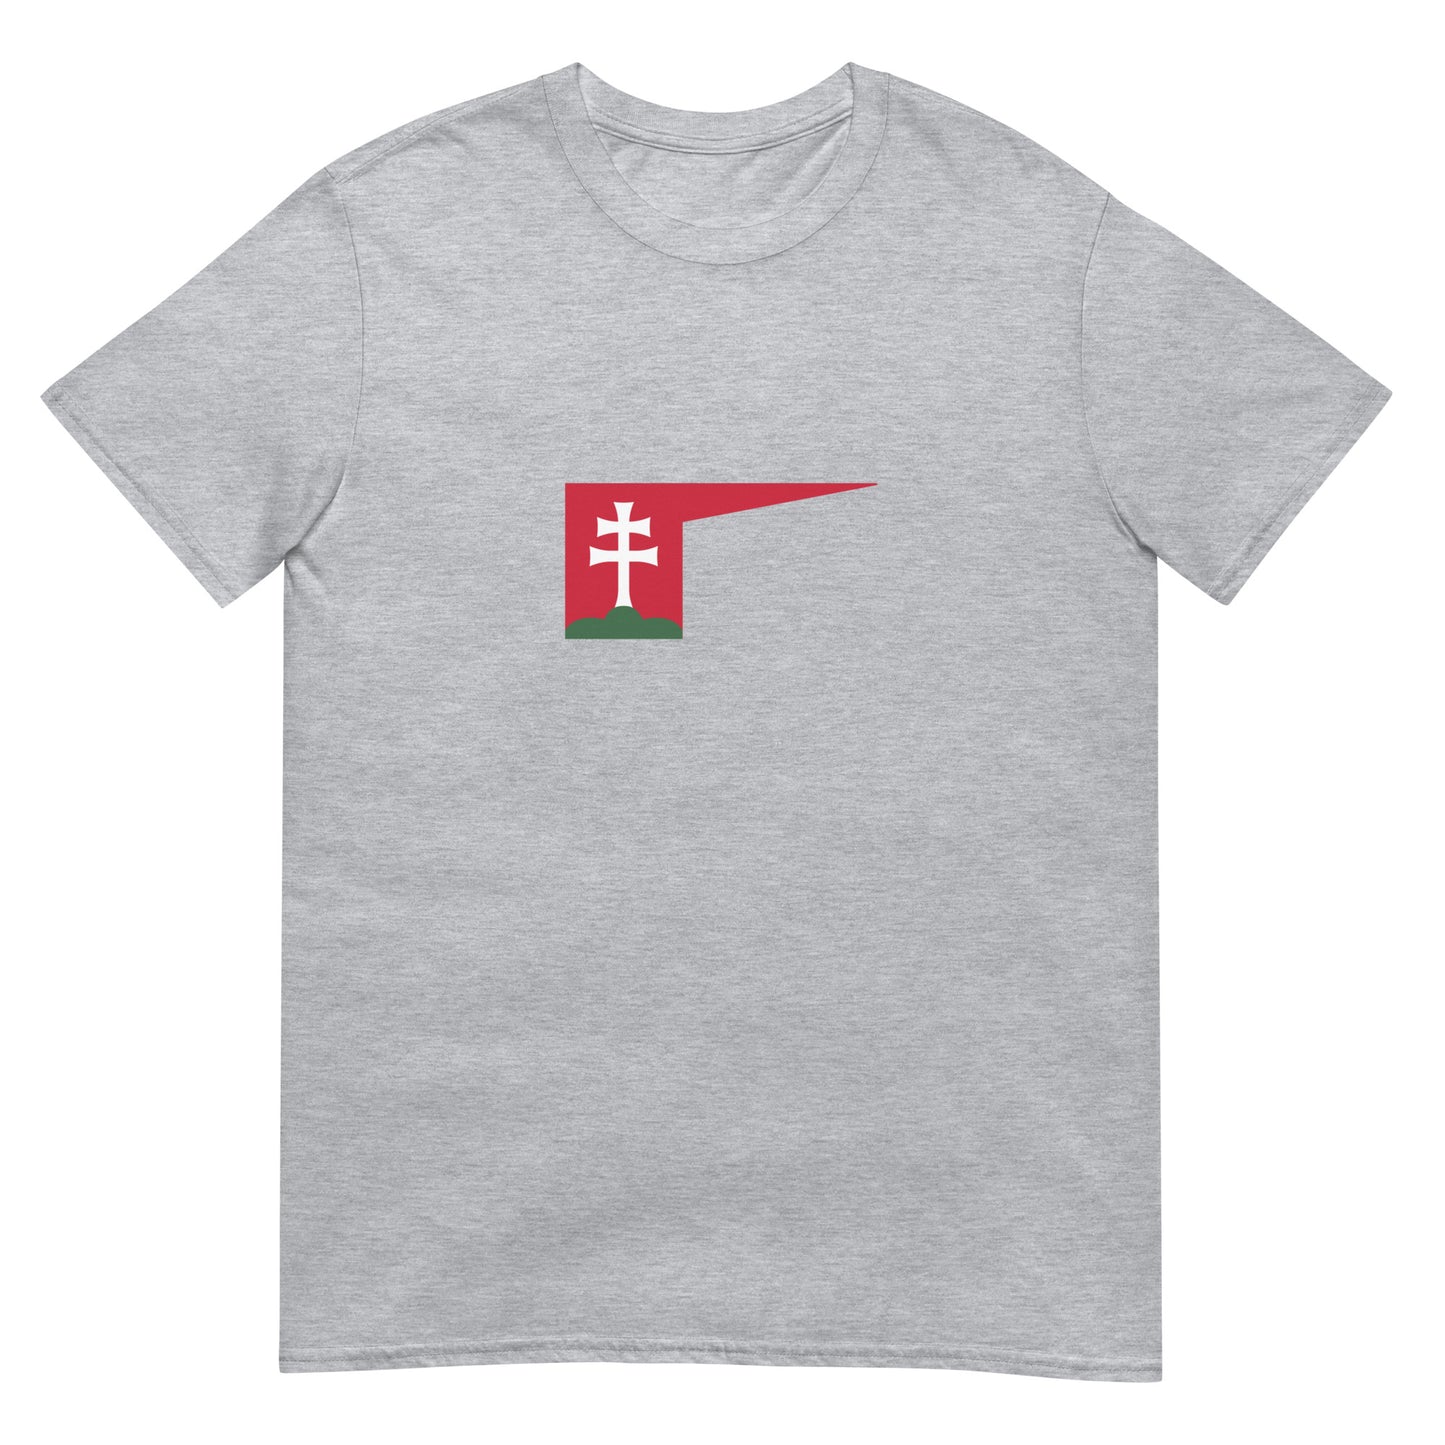 Hungary - Kingdom of Hungary (1000-1301) | Historical Flag Short-Sleeve Unisex T-Shirt